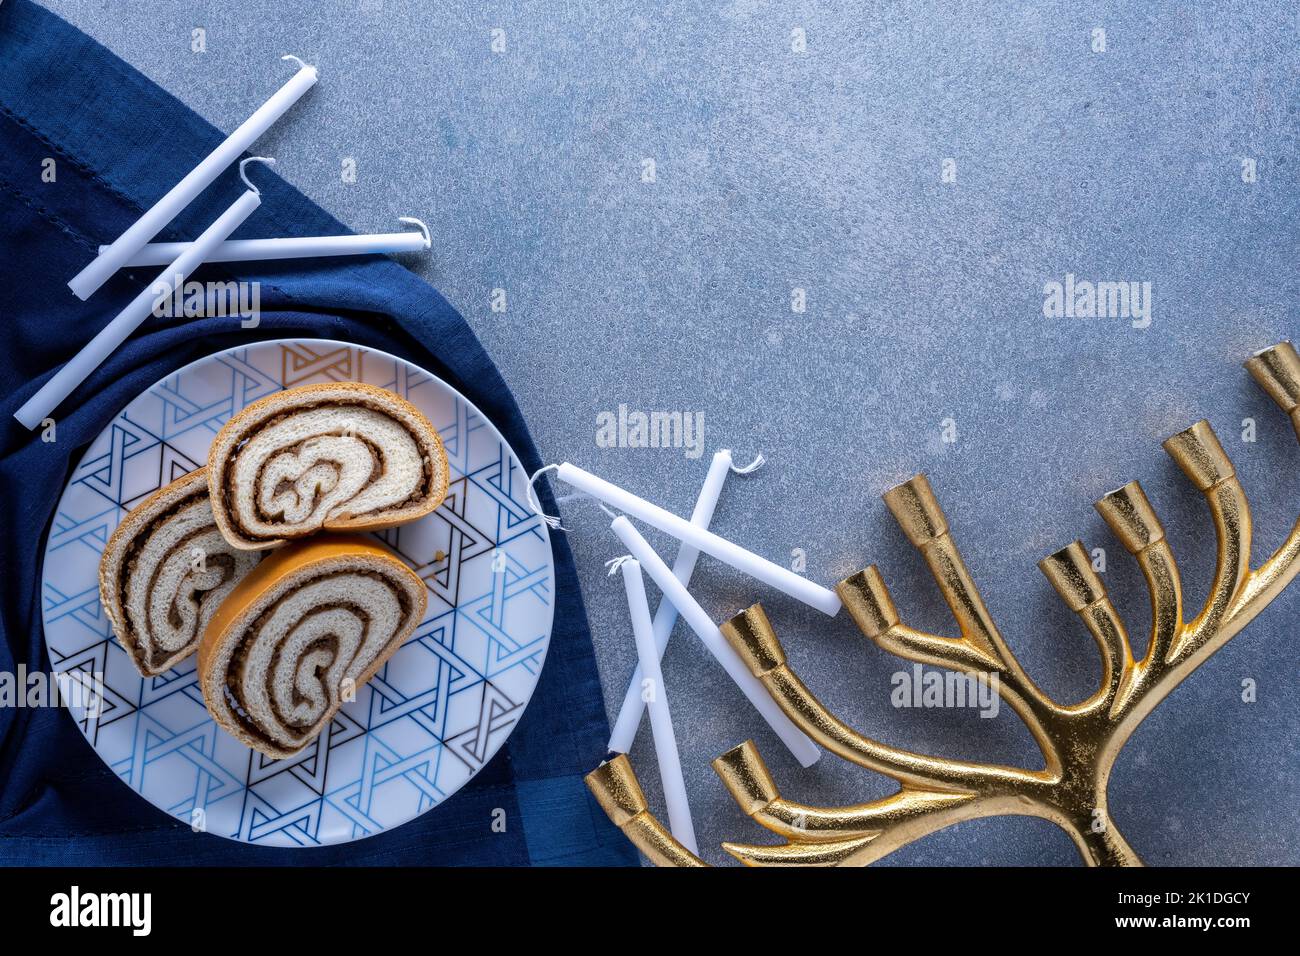 Piatto del deserto di Hanukkah con rotolo di noci, candele bianche e menorah dorata su sfondo blu strutturato Foto Stock